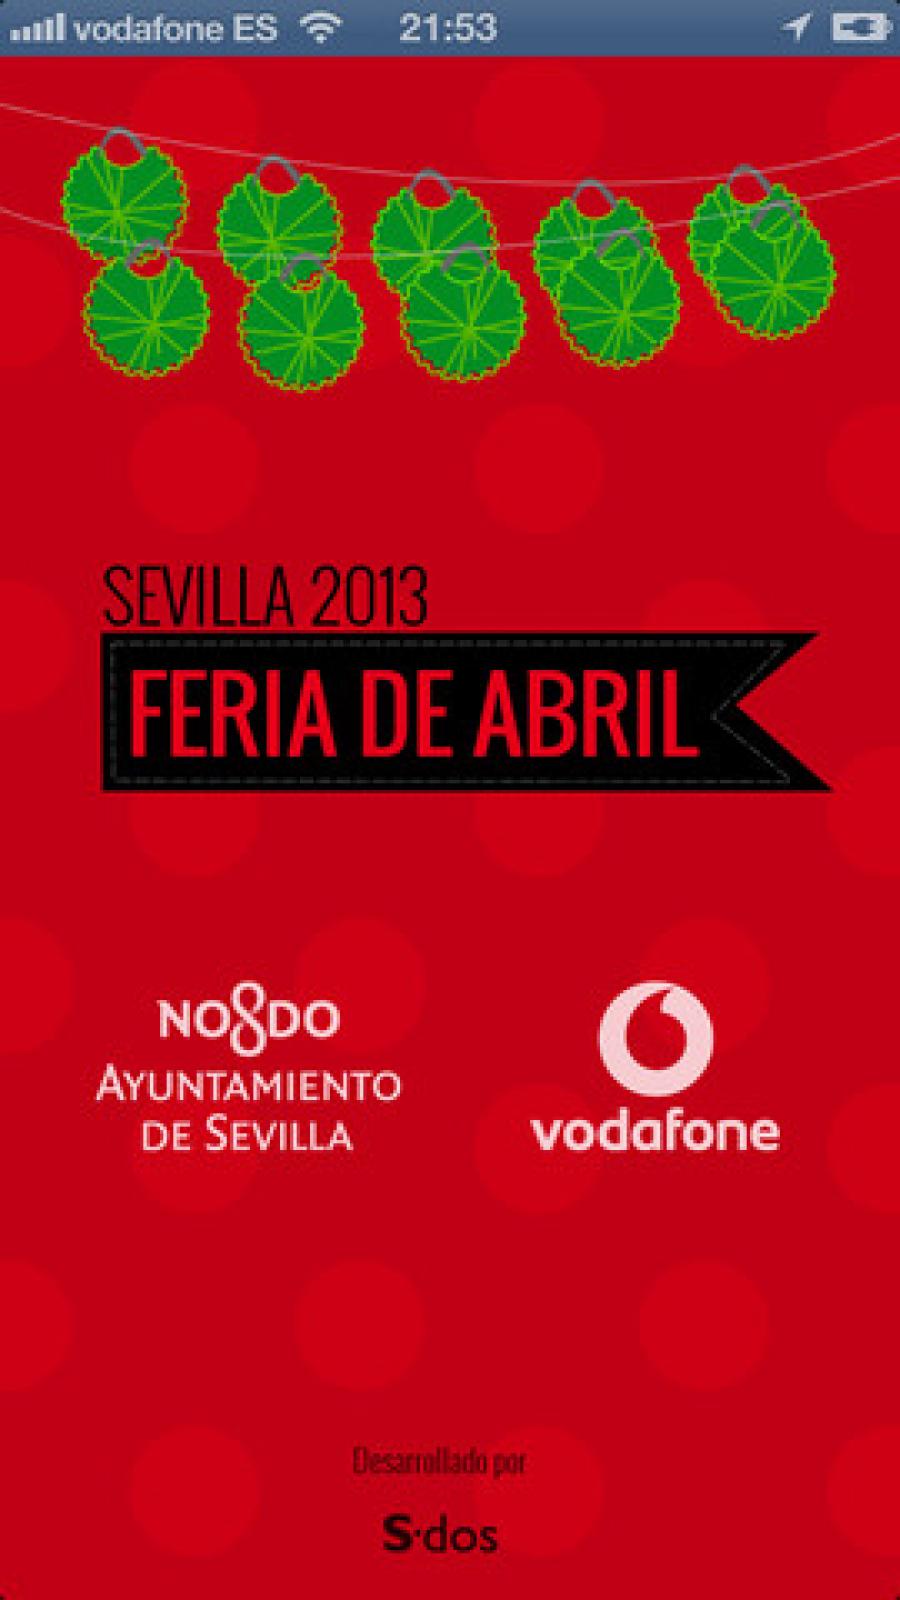 Feria de Abril 2013 - Sevilla